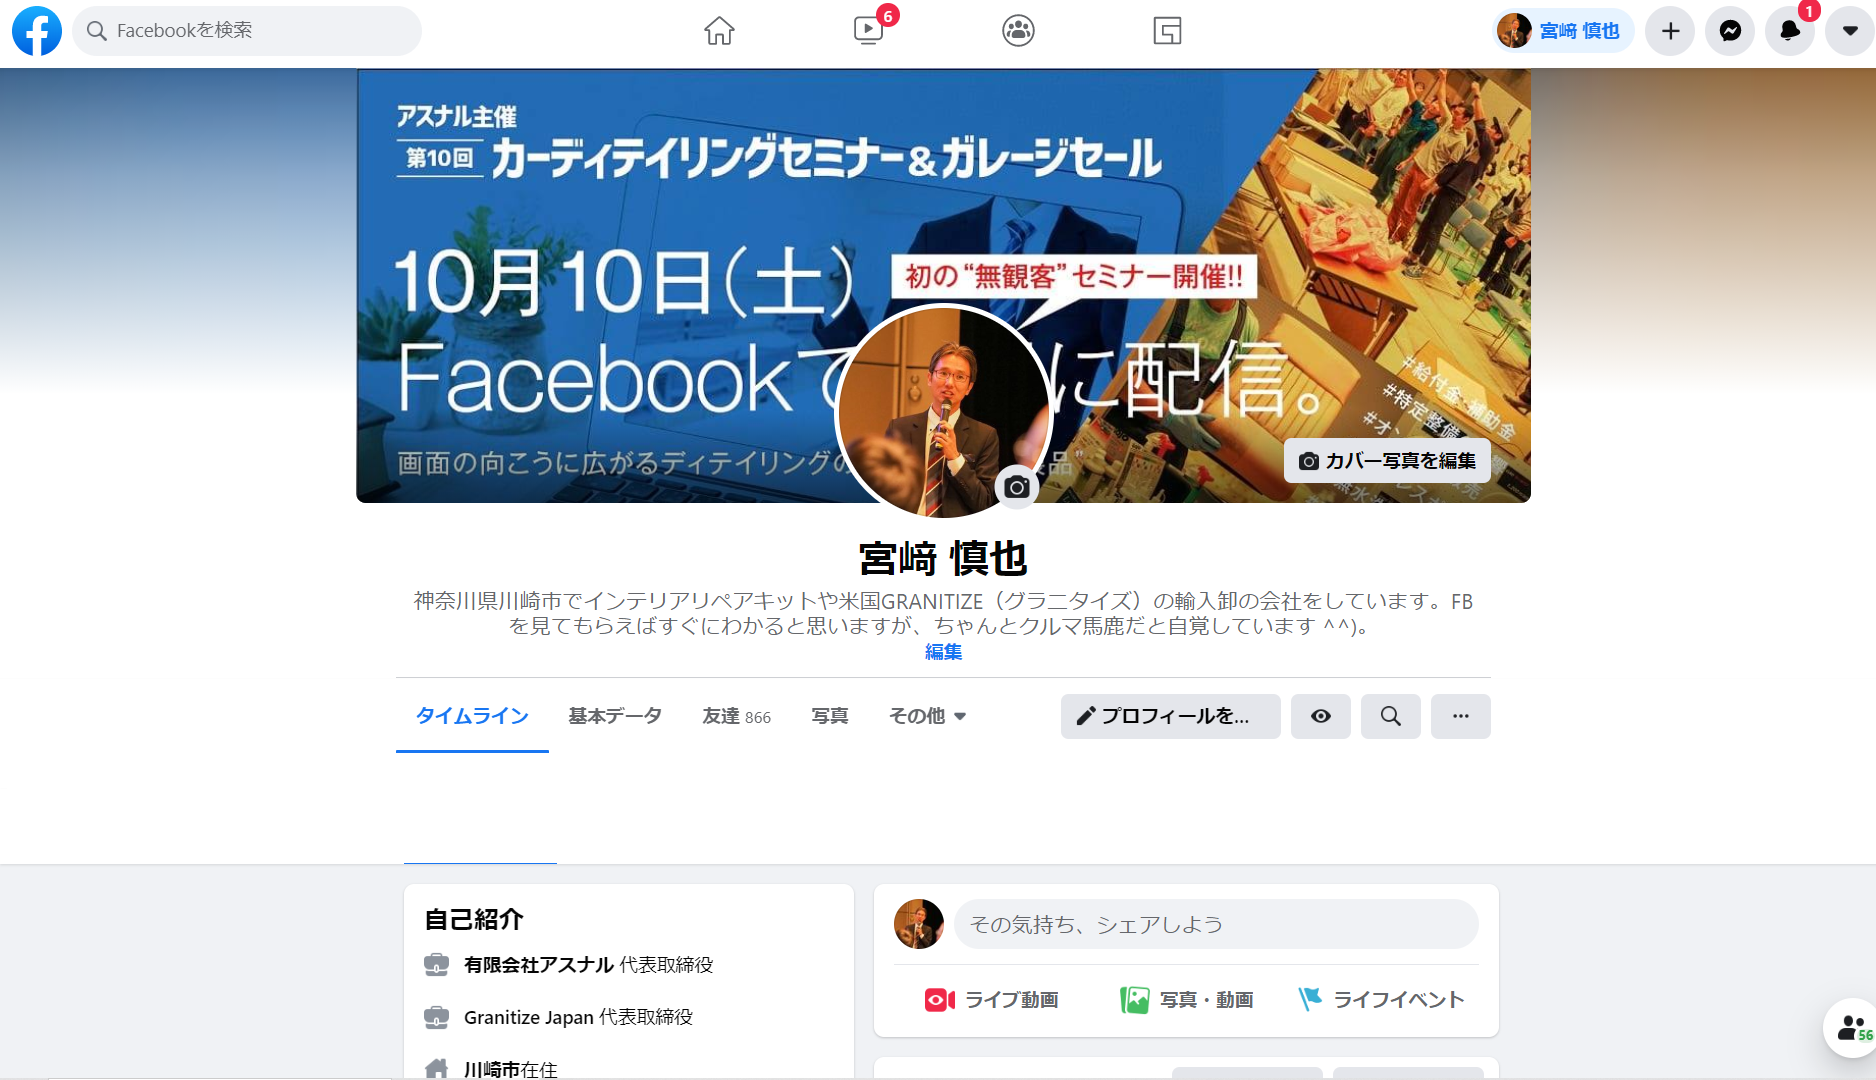 宮﨑慎也のフェイスブックアカウントになります。